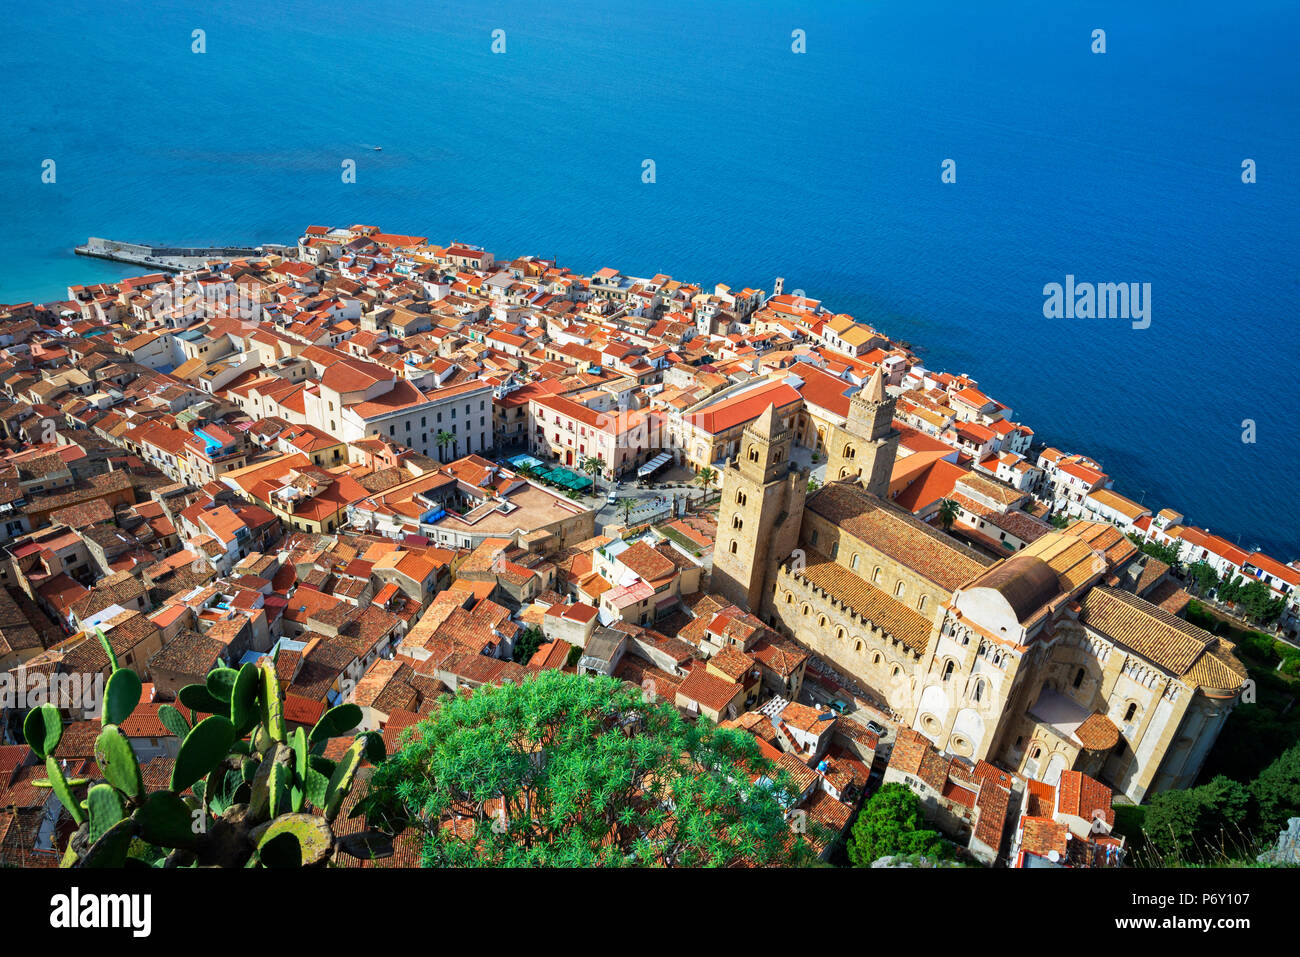 Vue de dessus de Cefalù, Cefalù, Sicile, Italie, Europe Banque D'Images